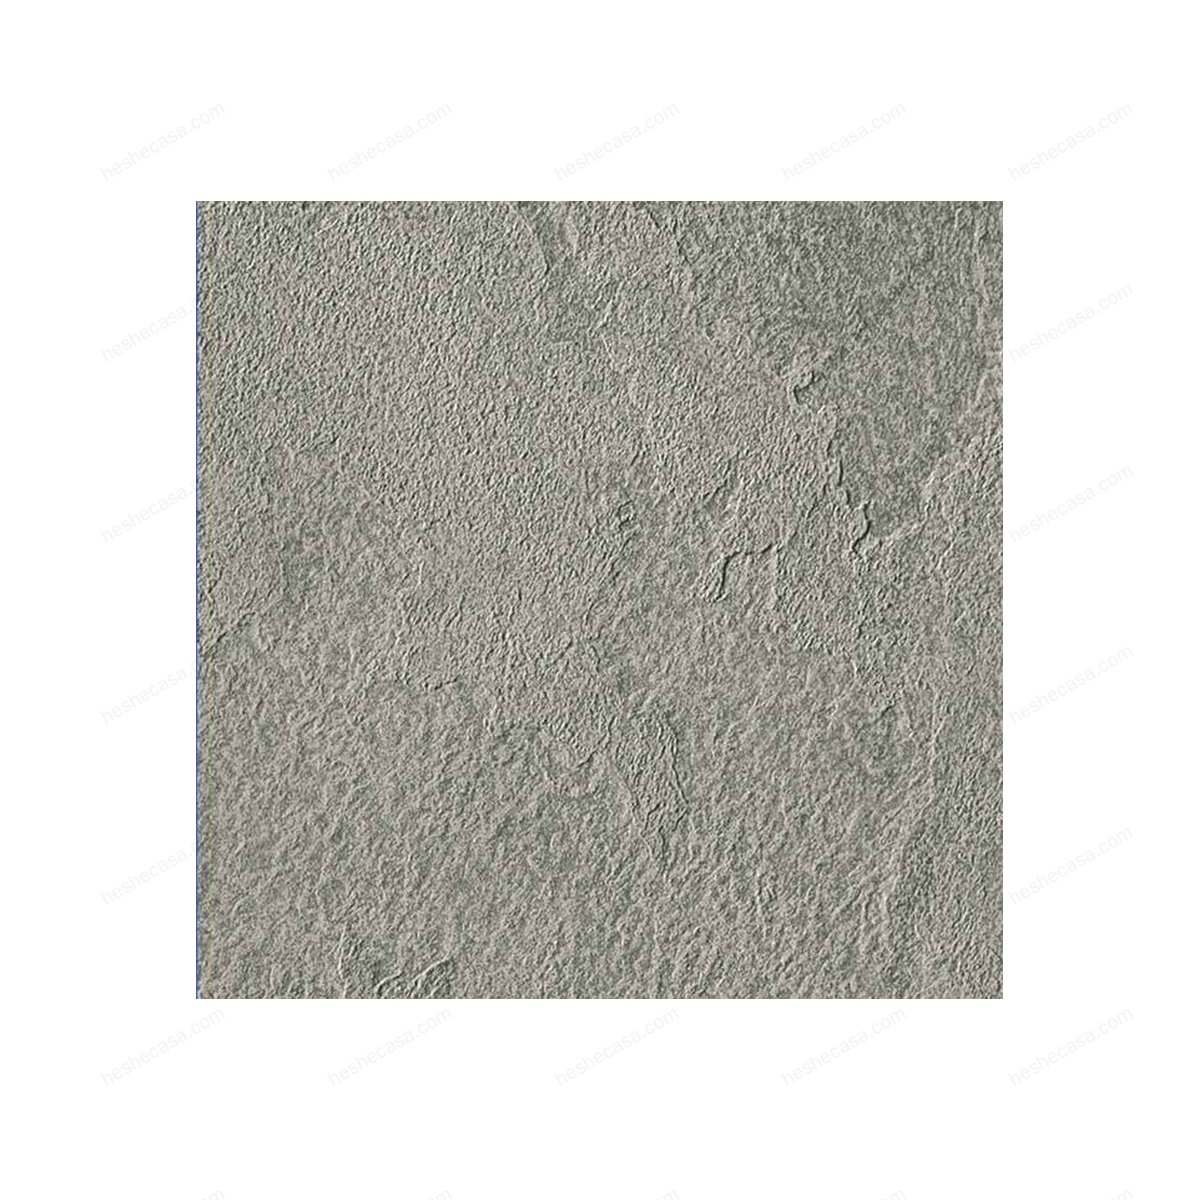 Mineral-chrom瓷砖